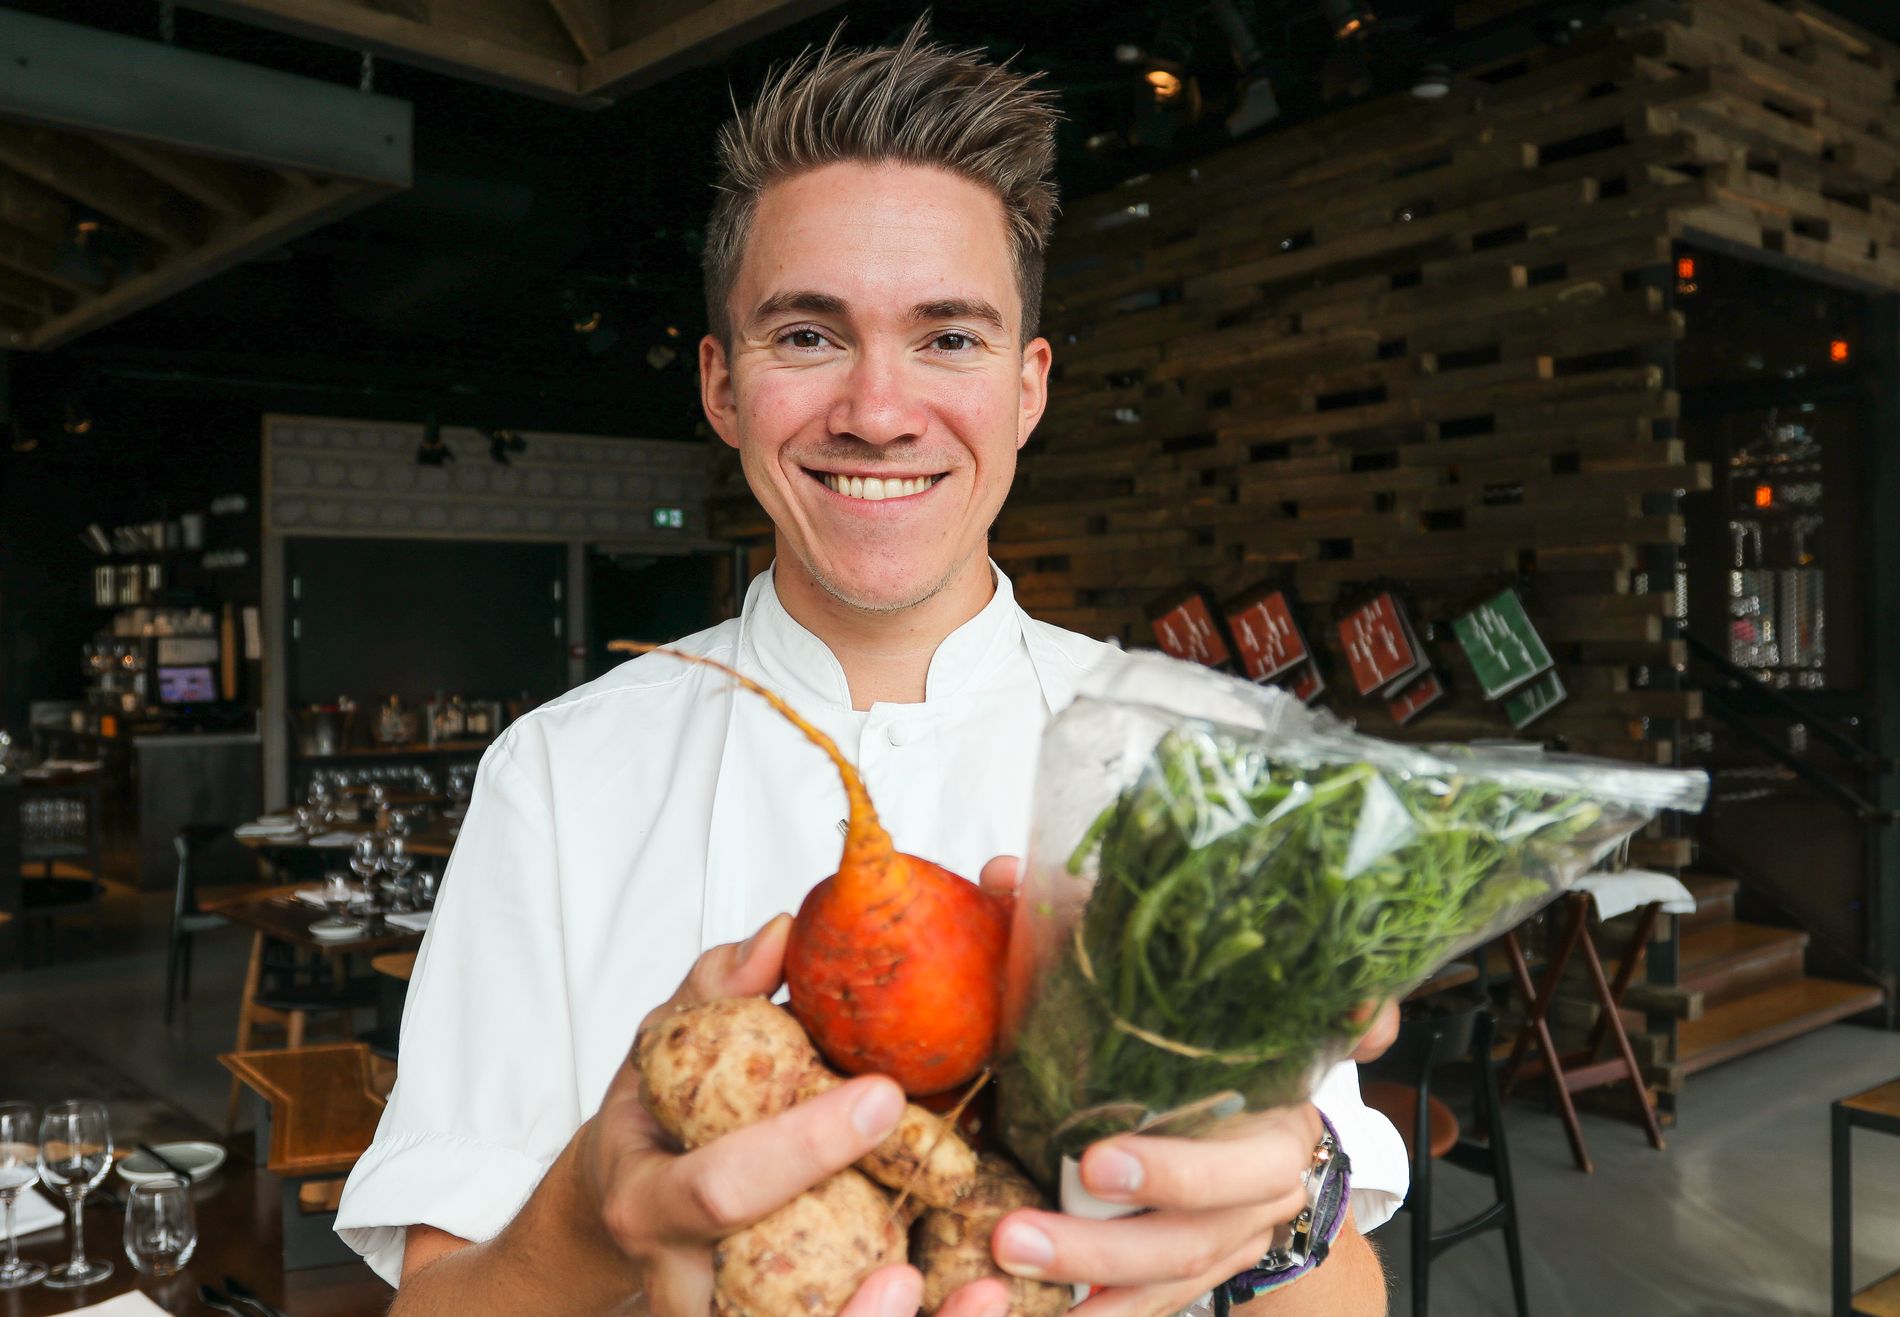 Christer Rødseth (28) jobber i dag som kjøkkensjef på restauranten Vaaghals i Oslo. Han er også kaptein på det norske kokkelandslaget. Som kokk og kjøkkensjef er han opptatt av å vise frem lokale råvarer og mindre produsenter, og samtidig øke bevisstheten rundt kortreist mat og hvordan folk selv kan tilberede norske og internasjonale retter med lokale produkter.